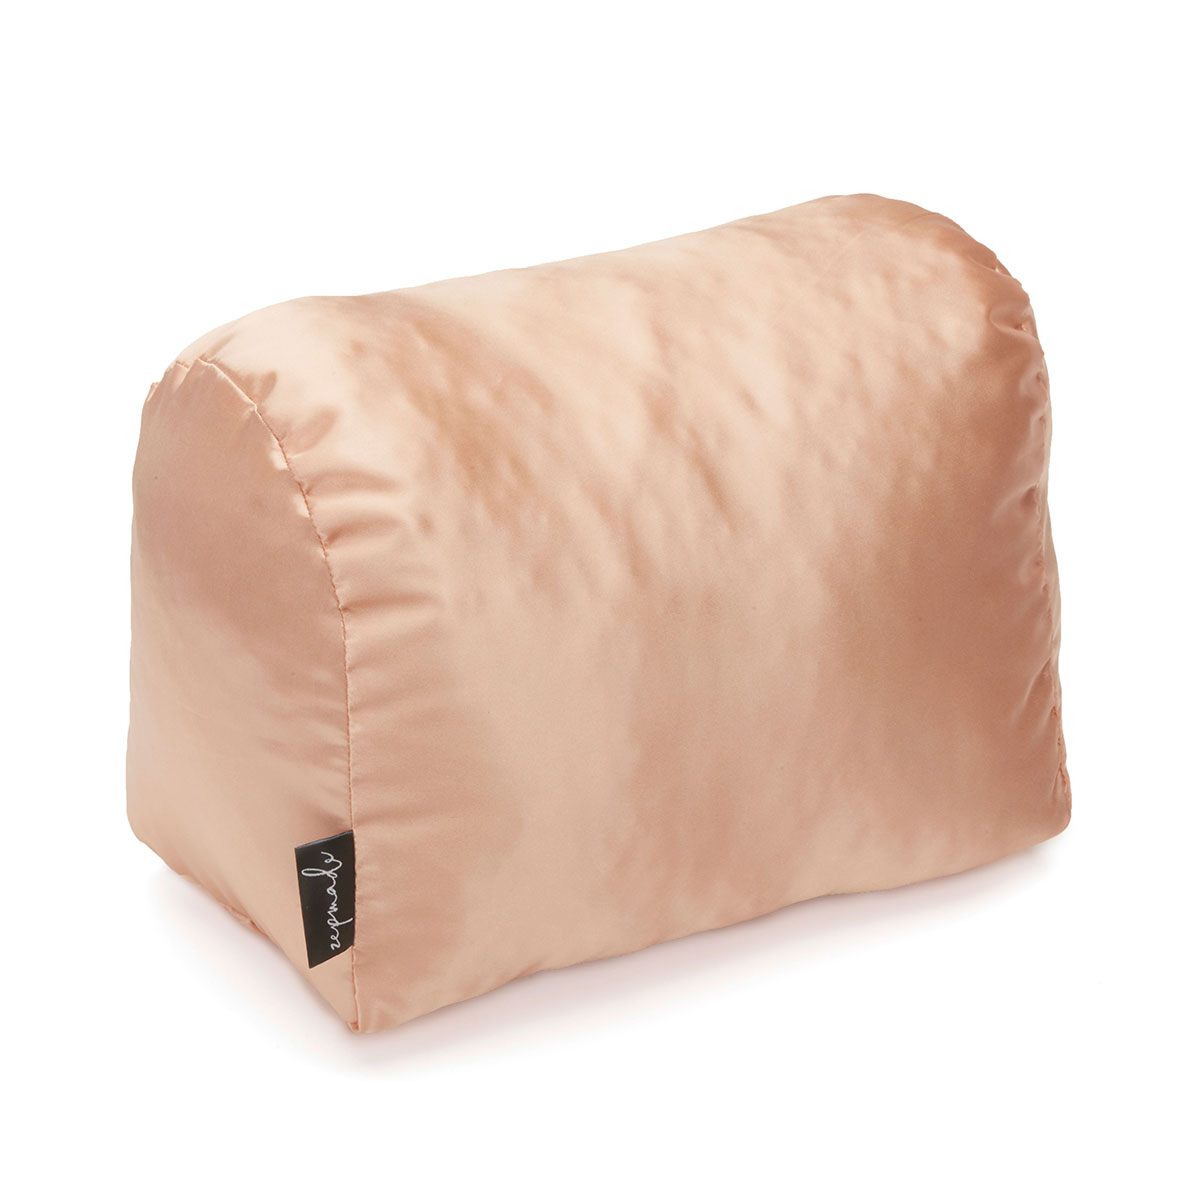 Satin Pillow Luxury Bag Shaper For Louis Vuitton's Speedy 25, Speedy 30, Speedy  35 and Speedy 40 in Burgundy